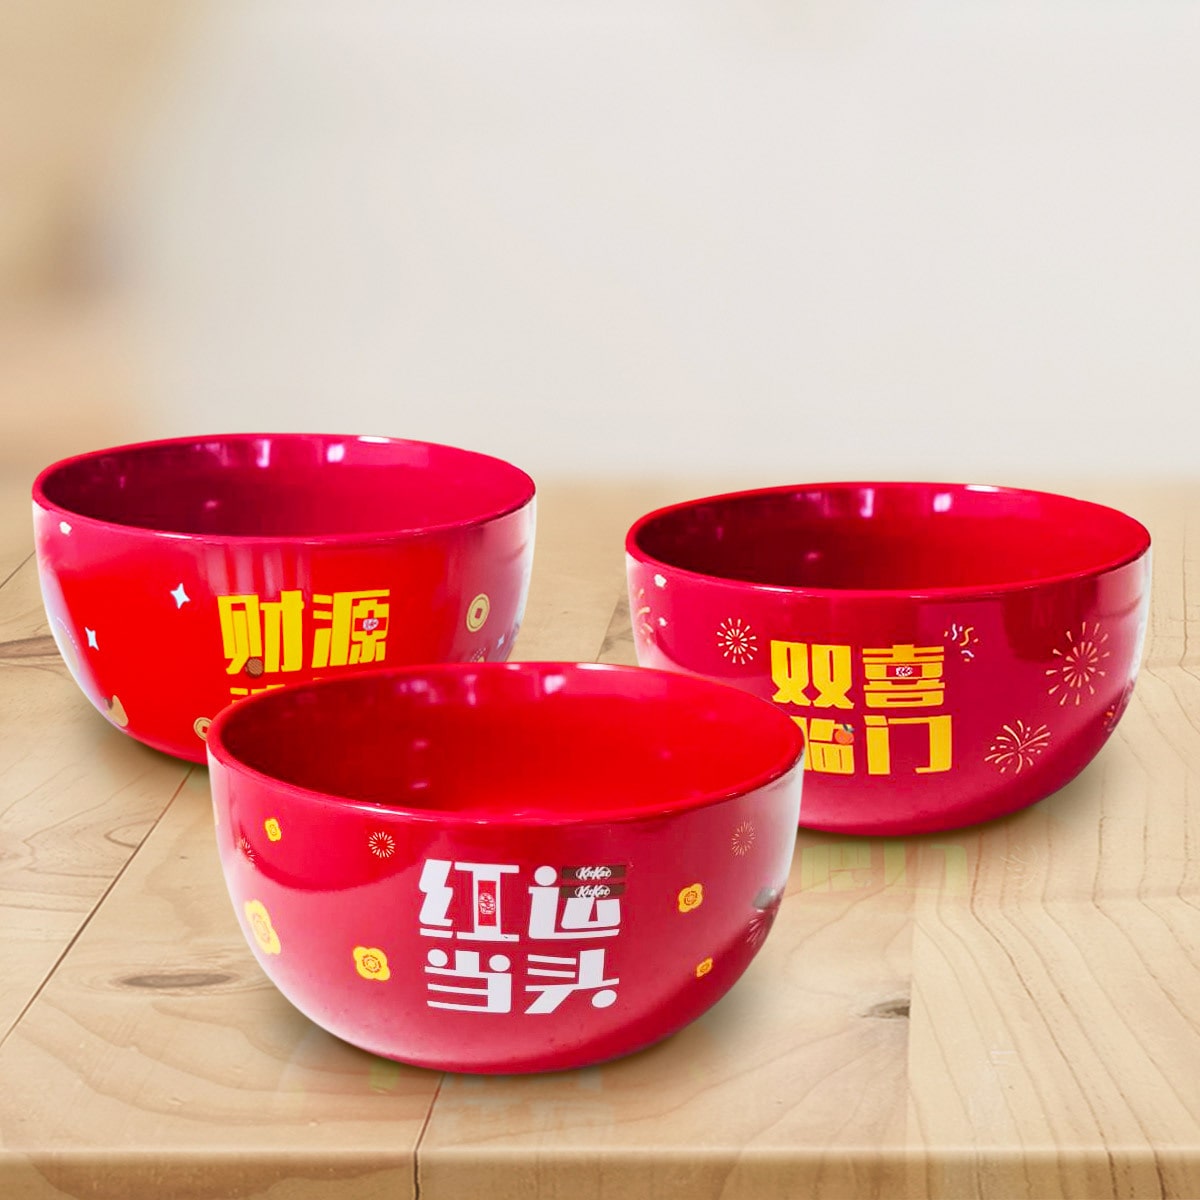 Customised Ceramic Bowl